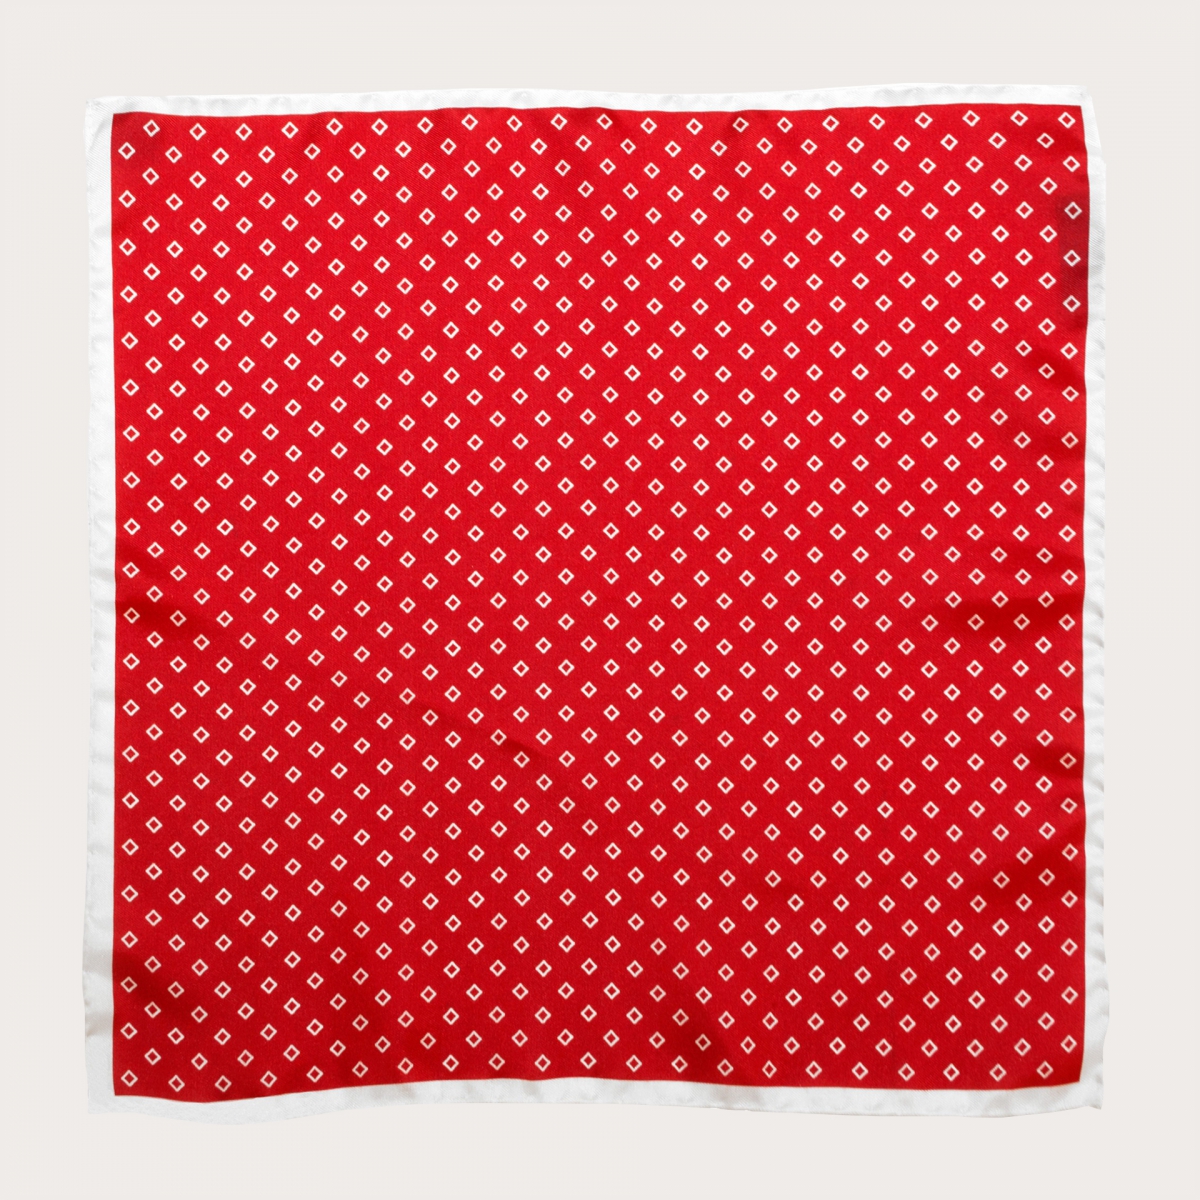 BRUCLE Elegante pañuelo de bolsillo en seda con estampado de rombos, rojo